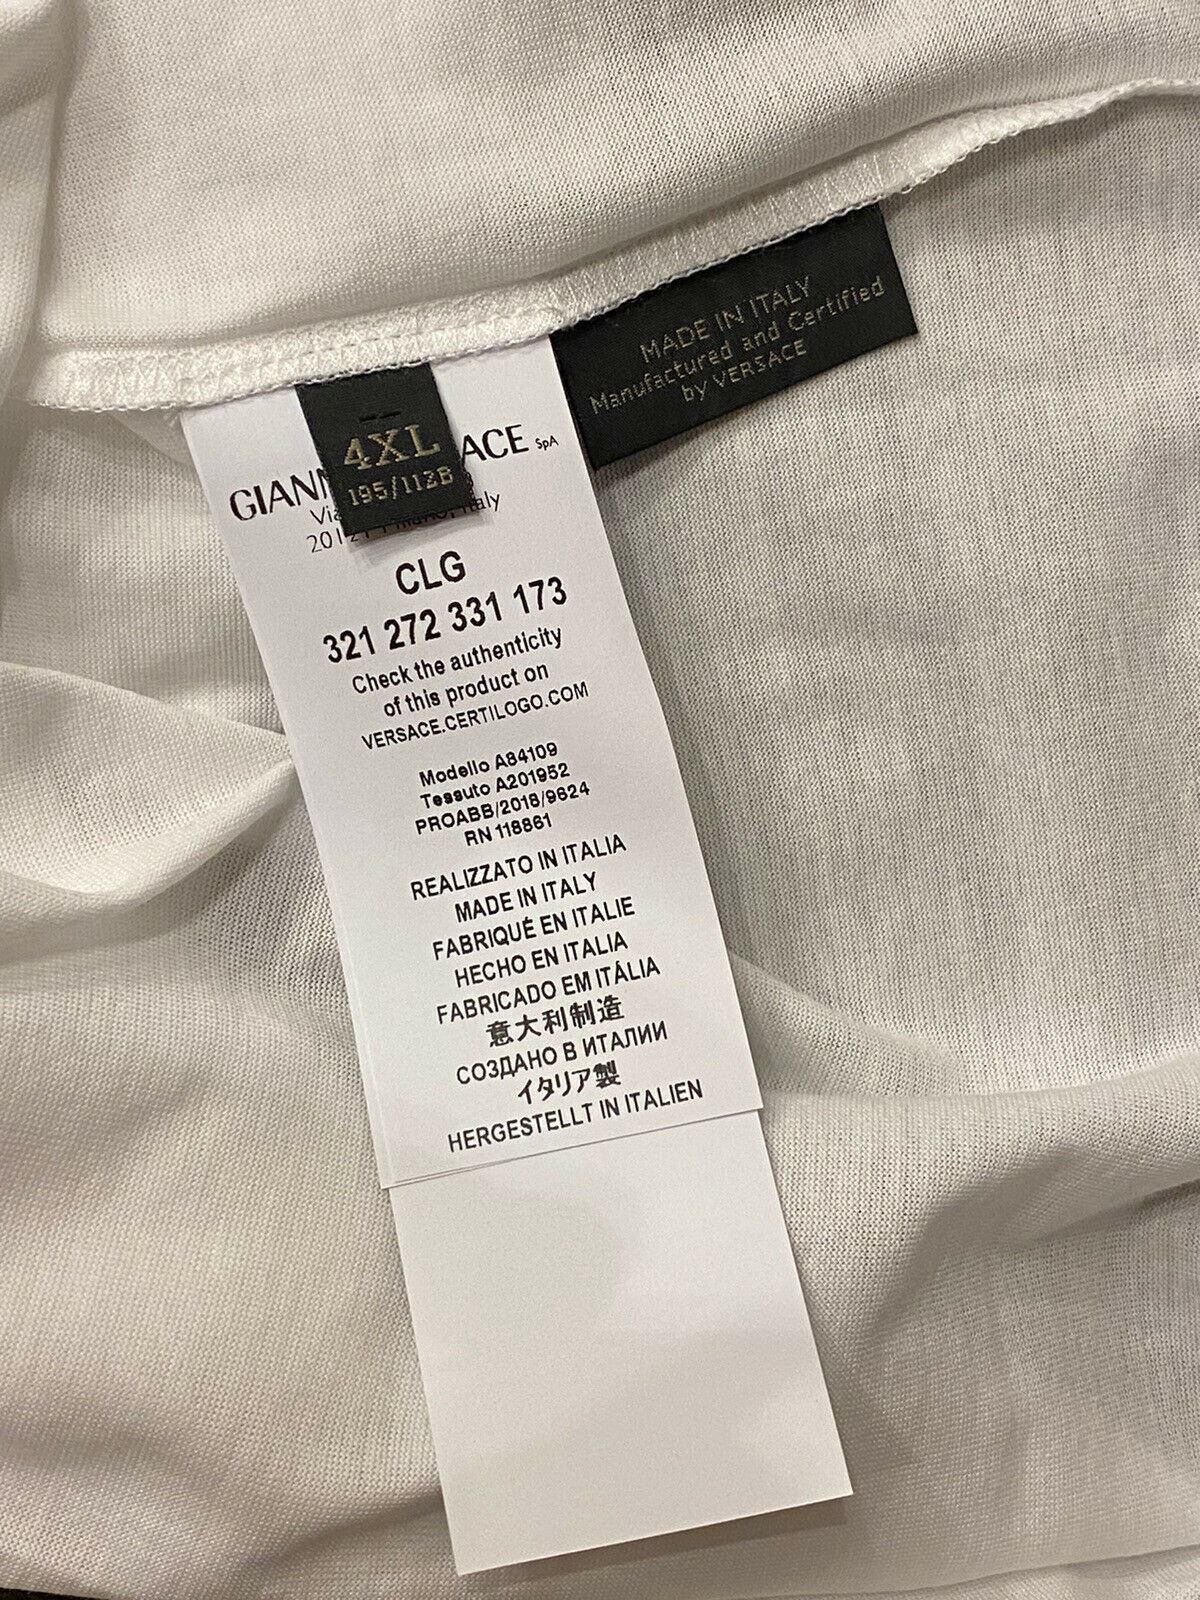 Neu mit Etikett: 450 $ Versace I Love NY Print Weißes T-Shirt 4XL Hergestellt in Italien A84109 